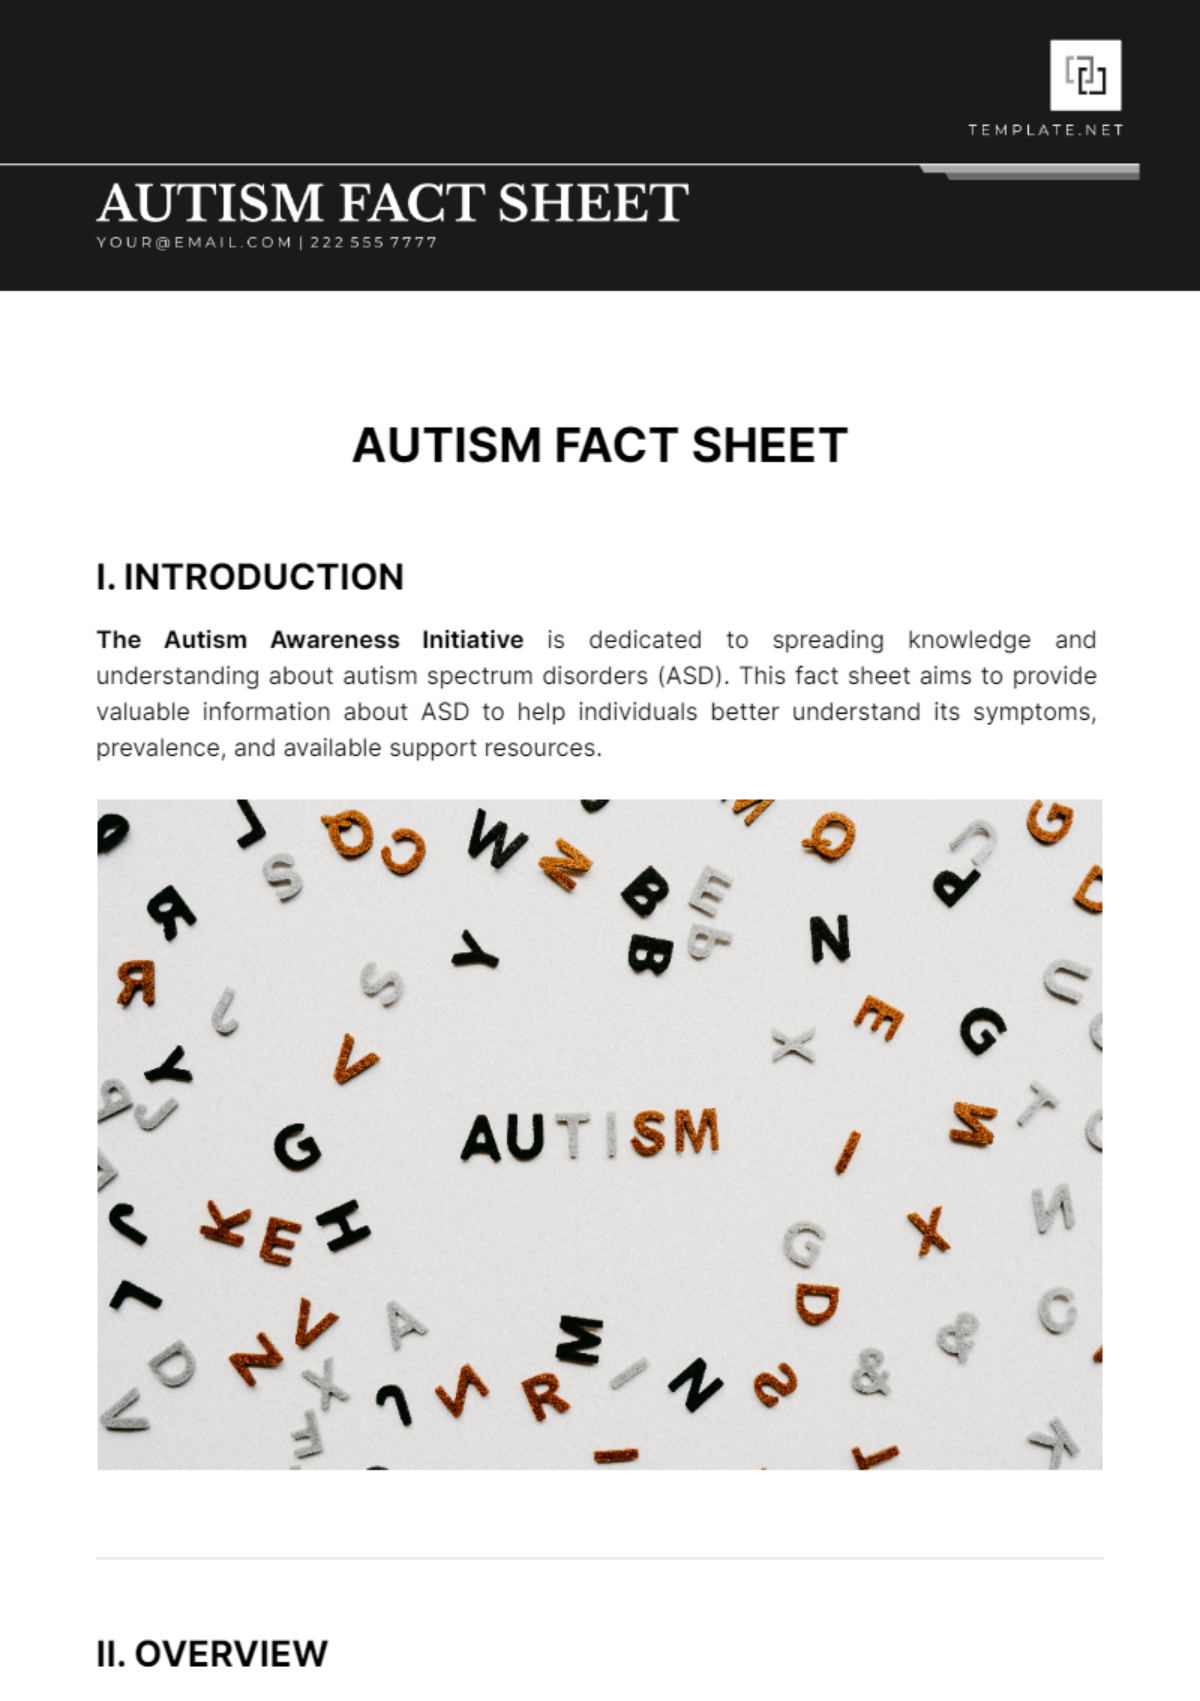 Autism Fact Sheet Template